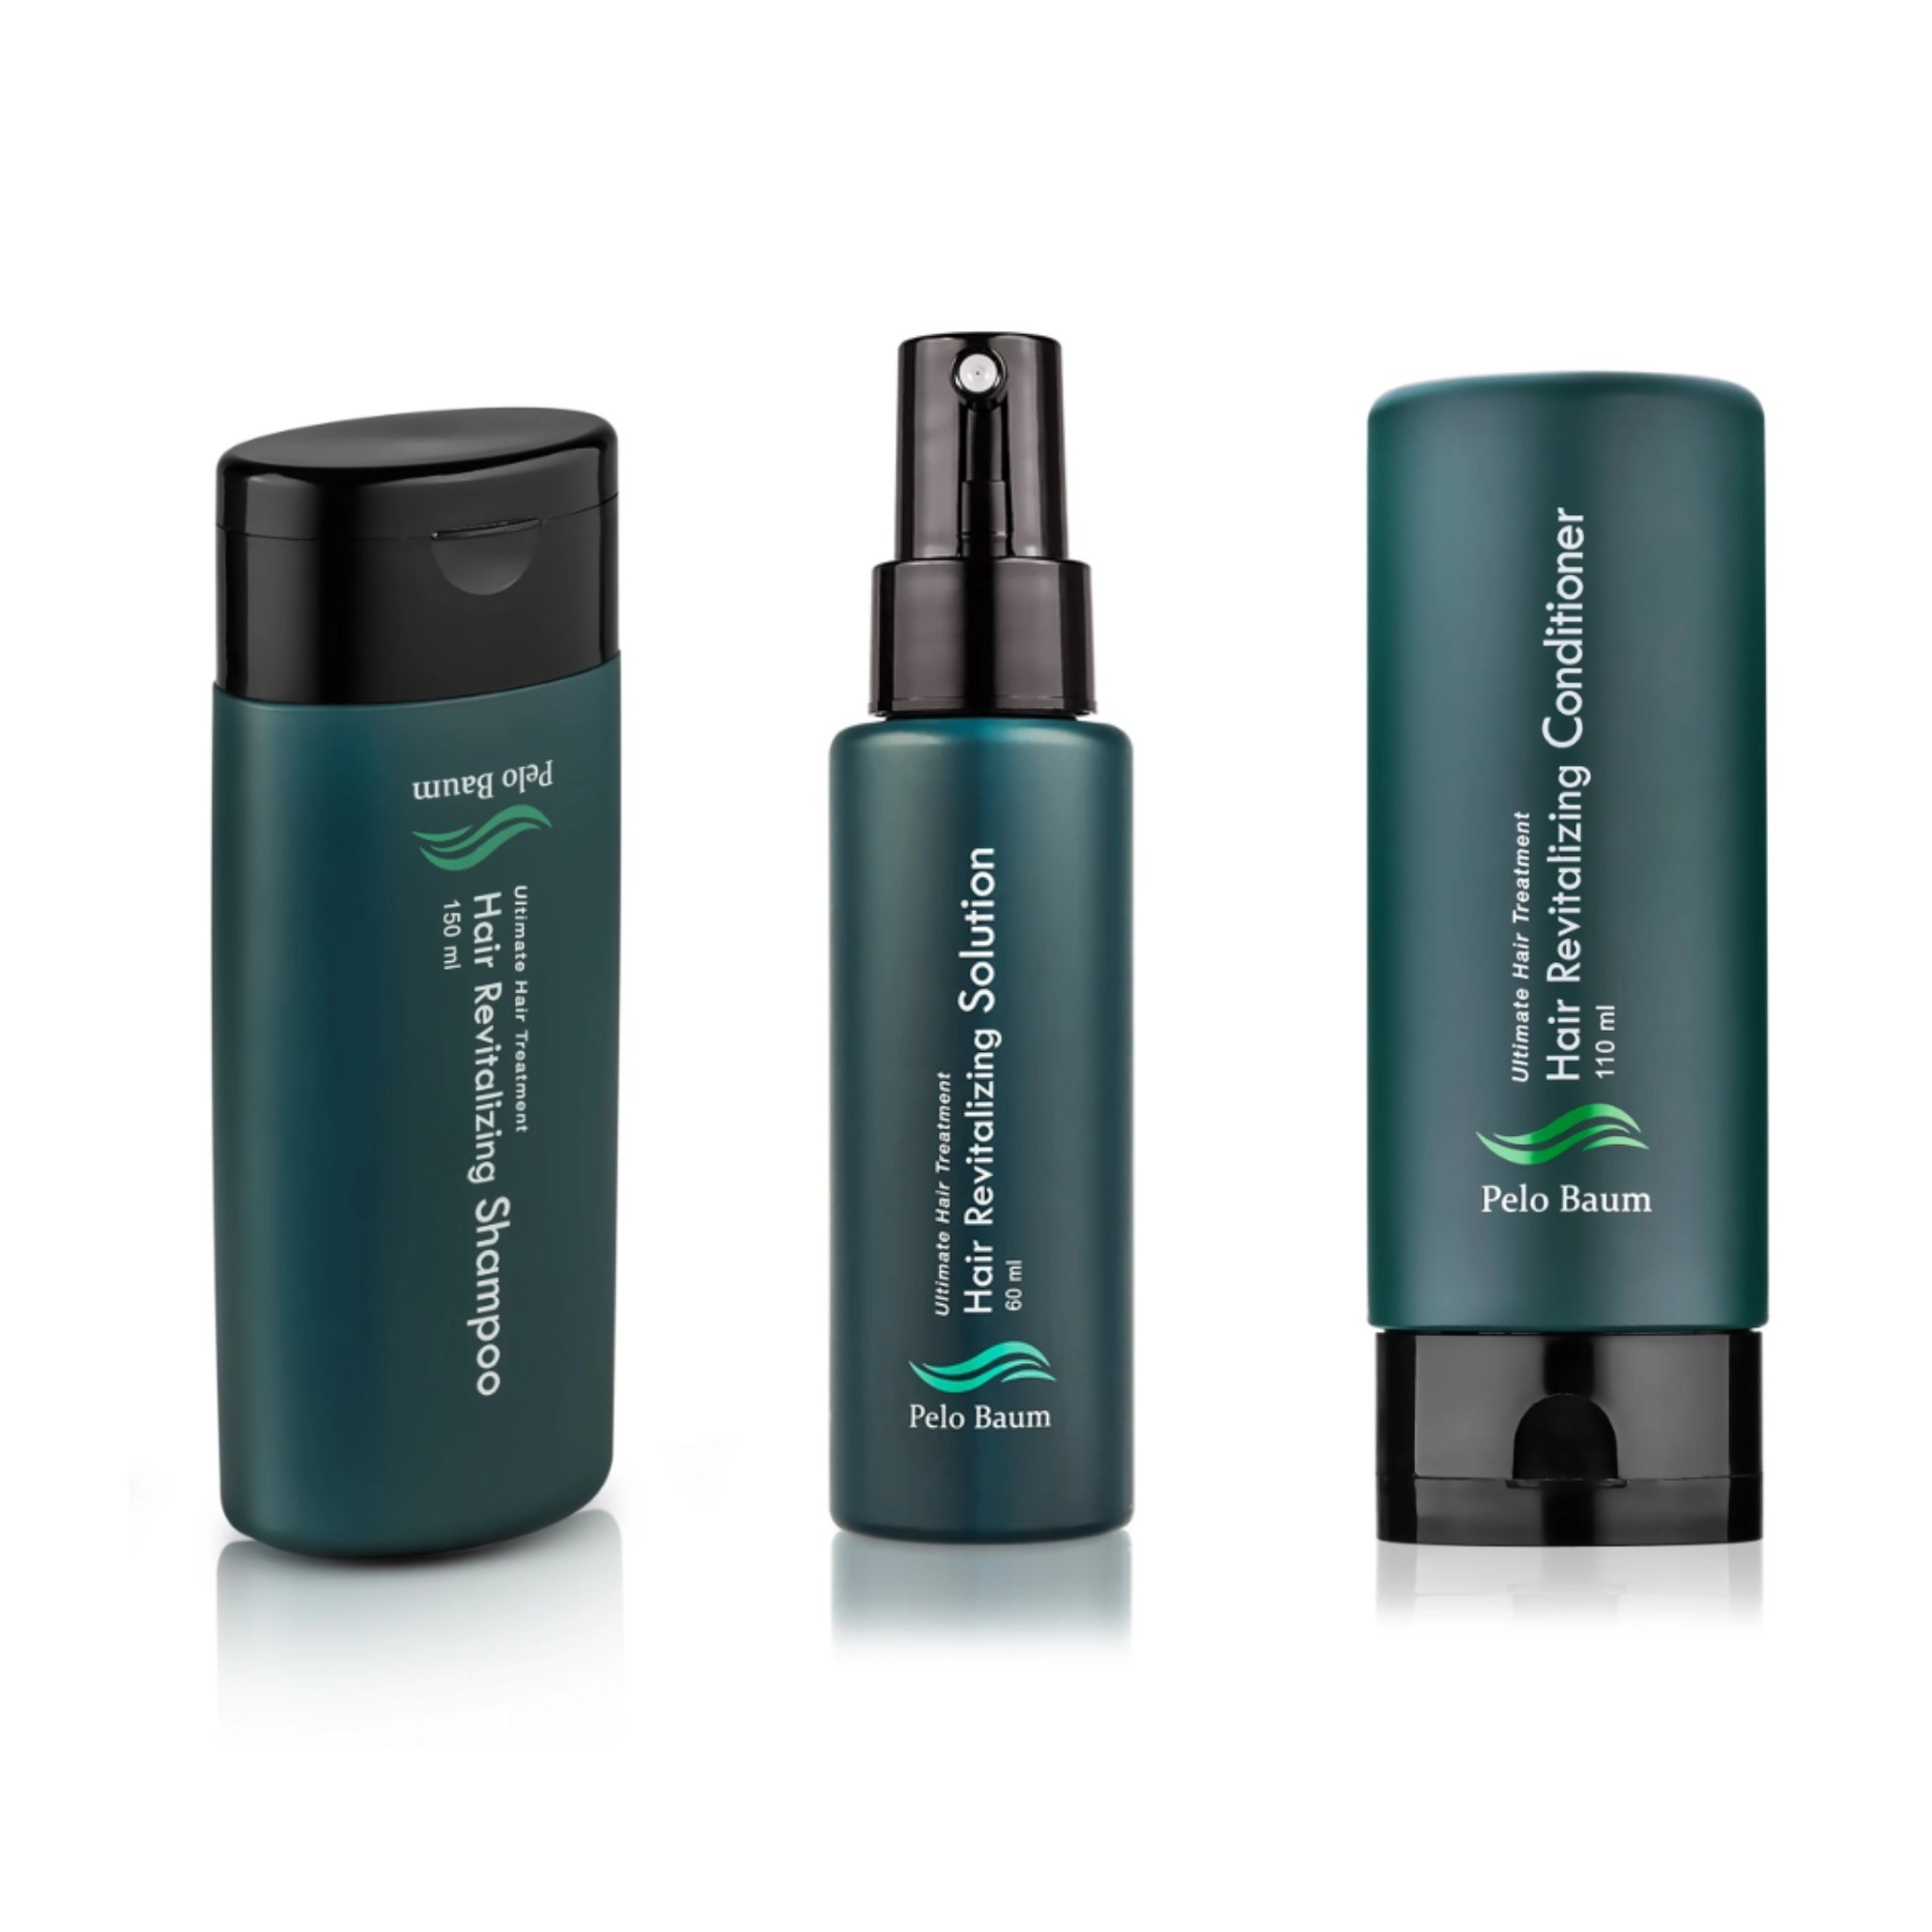 Balíček proti vypadávaniu vlasov: Pelo Baum sérum + šampón + kondicionér